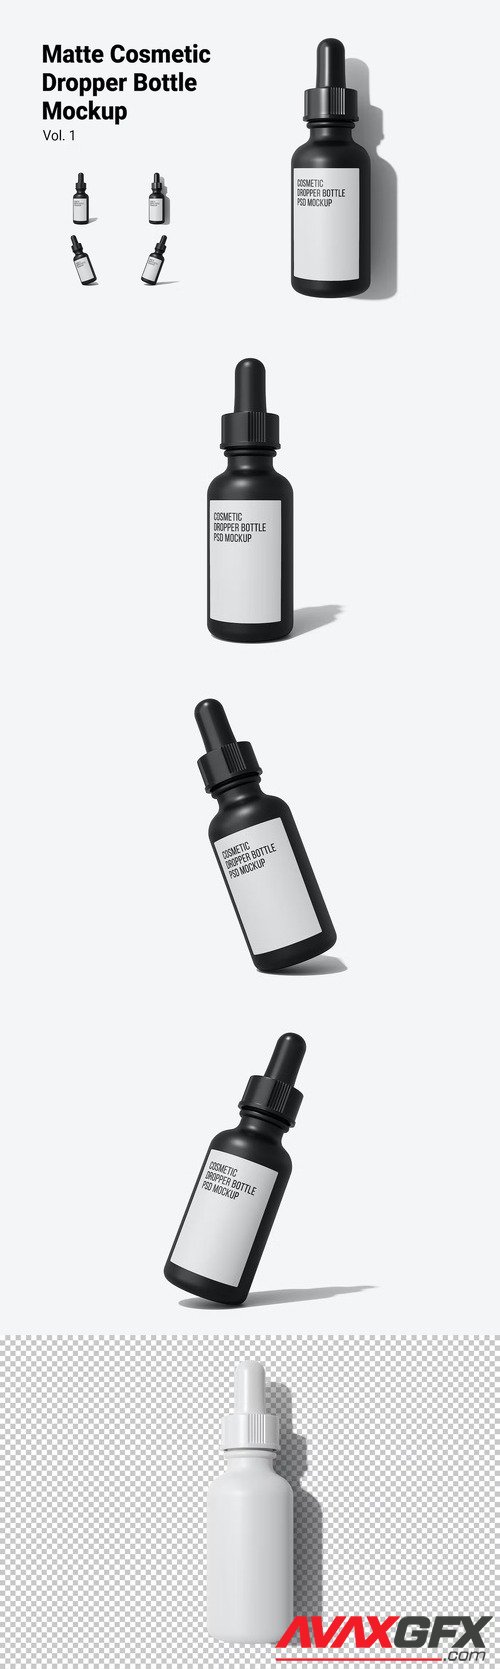 Matte Cosmetic Dropper Bottle Mockup Vol.1 [PSD]